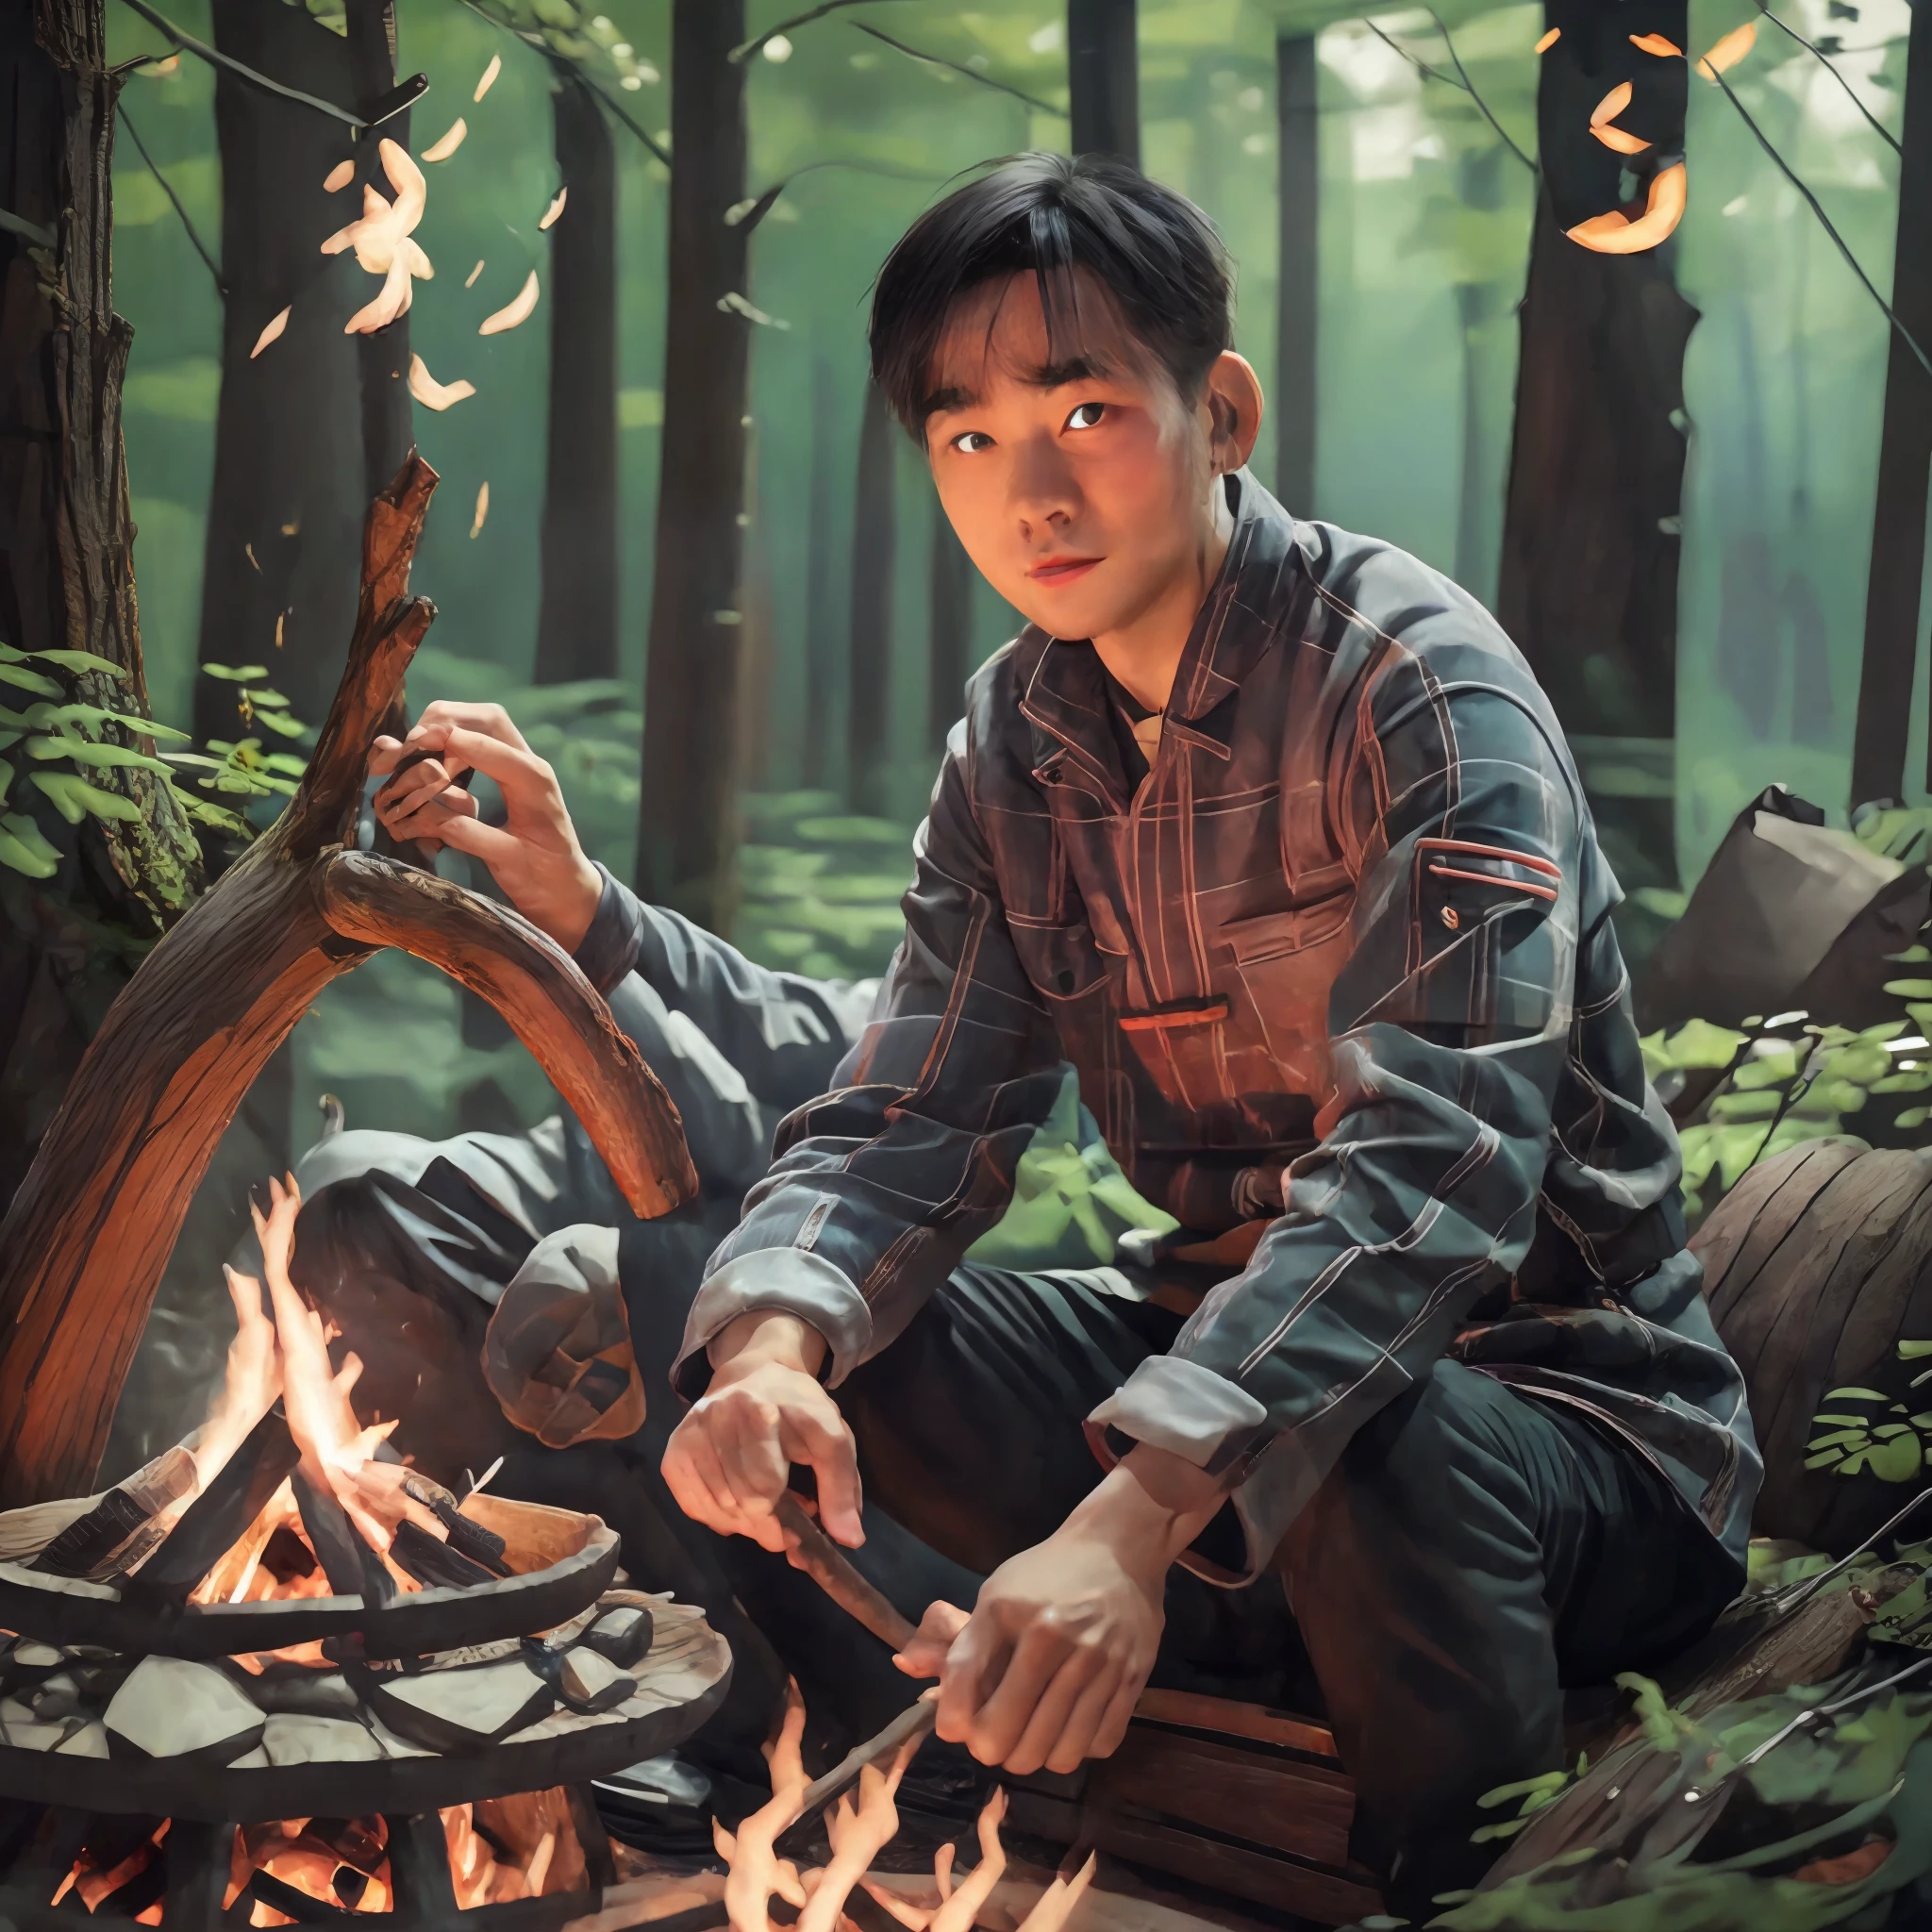 中國男子坐在樹林裡的營火前, 艾蒂安·德萊塞的肖像, pexels 競賽獲勝者, 數位藝術, 8k藝術人像攝影, 無名氏的戲劇性肖像, 人像拍攝8K, 電影肖像, 電影. 作者: leng jun, 人像拍攝, 電影肖像, 環境肖像, Dramatic 電影肖像